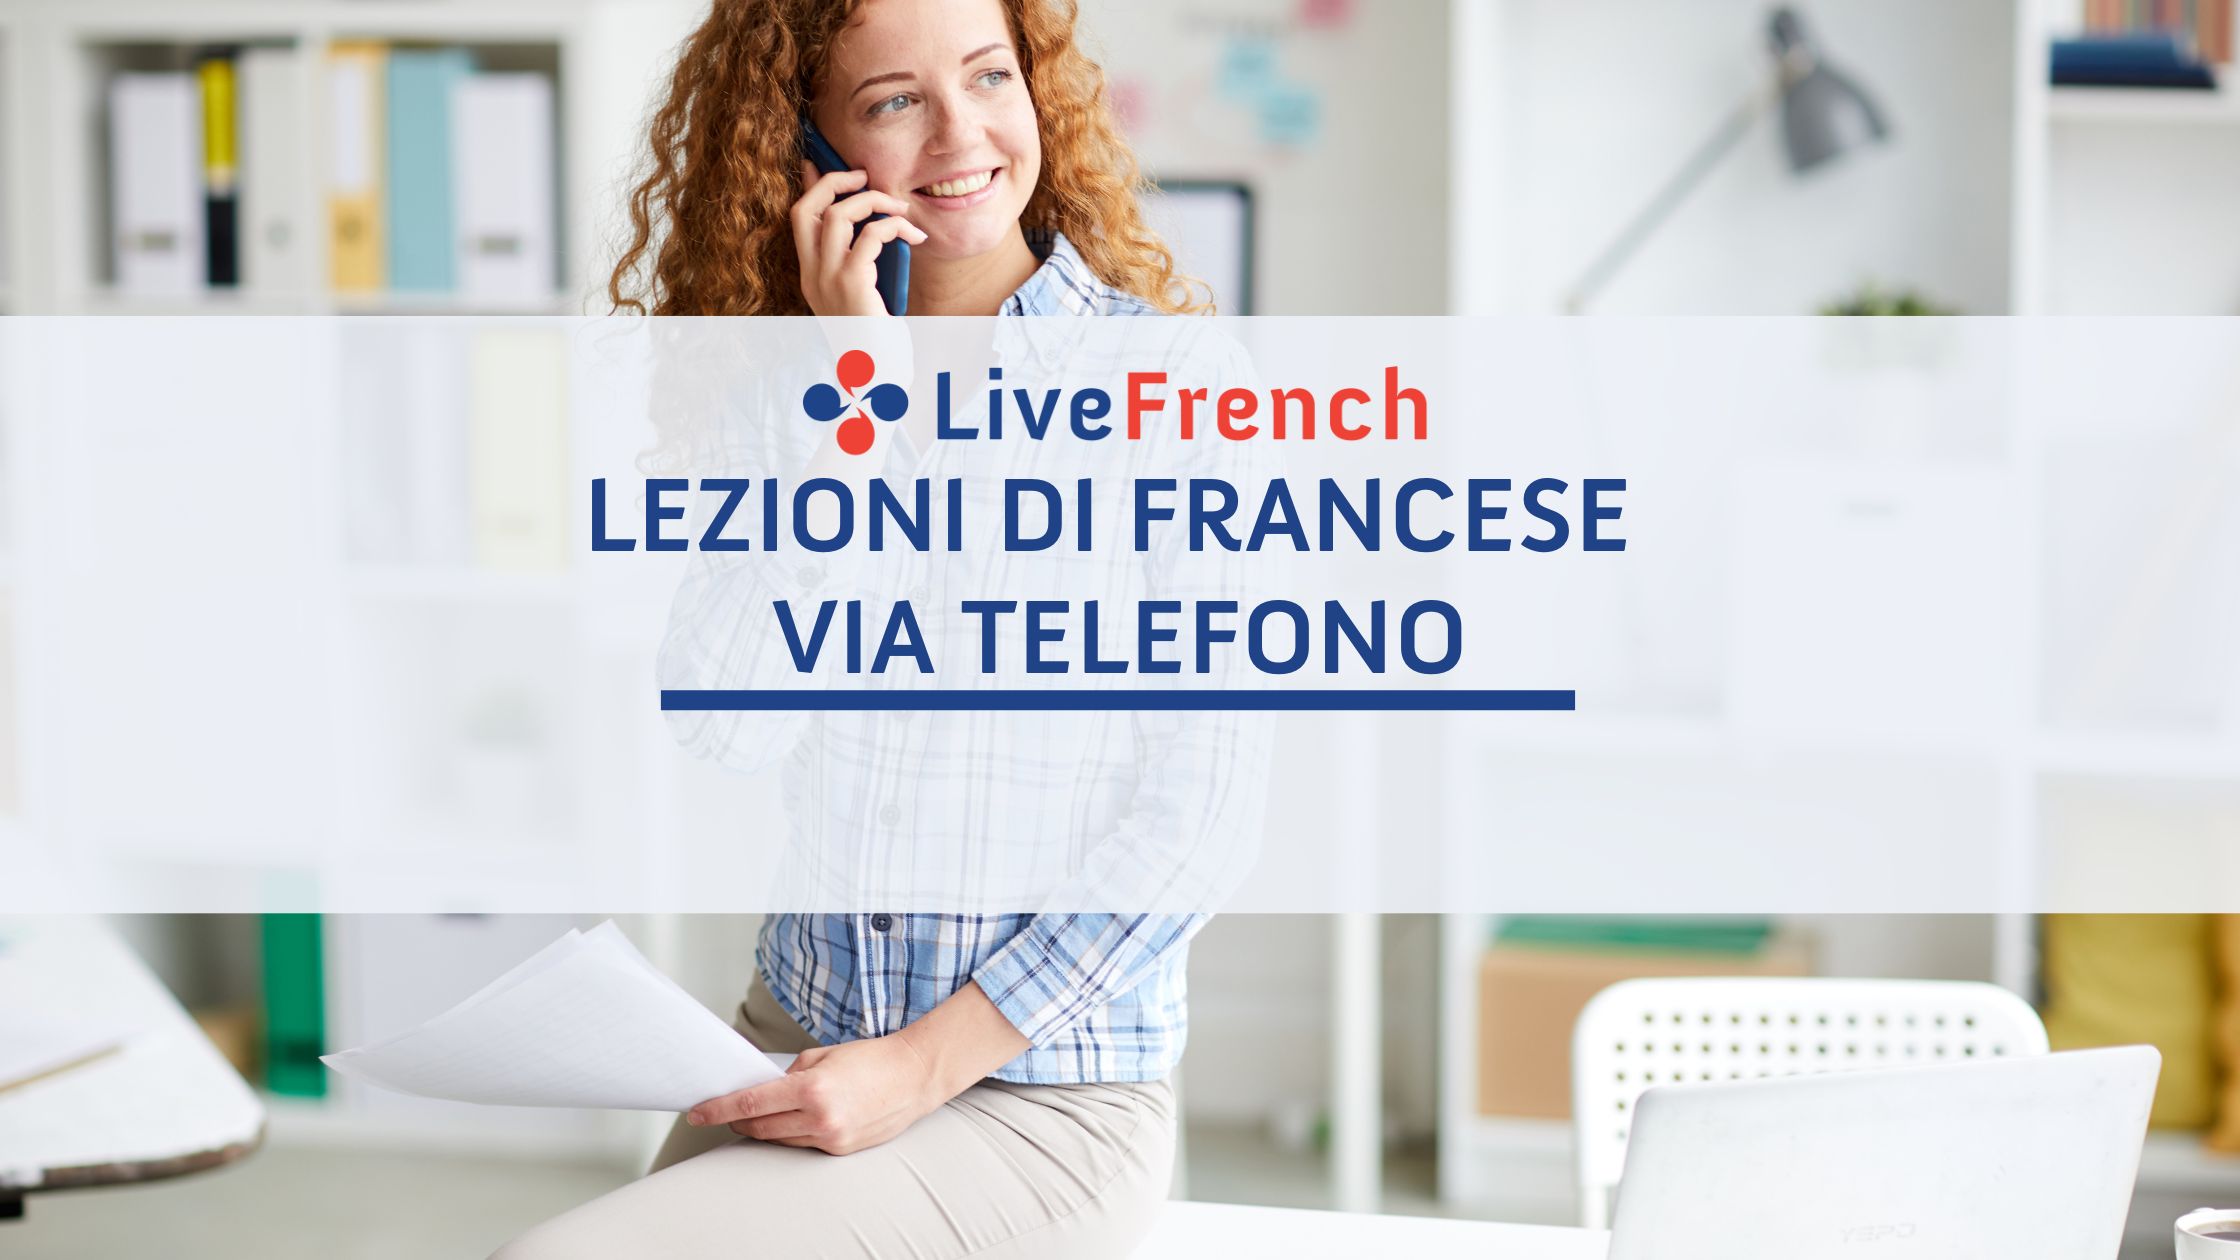 Lezioni di Francese via Telefono